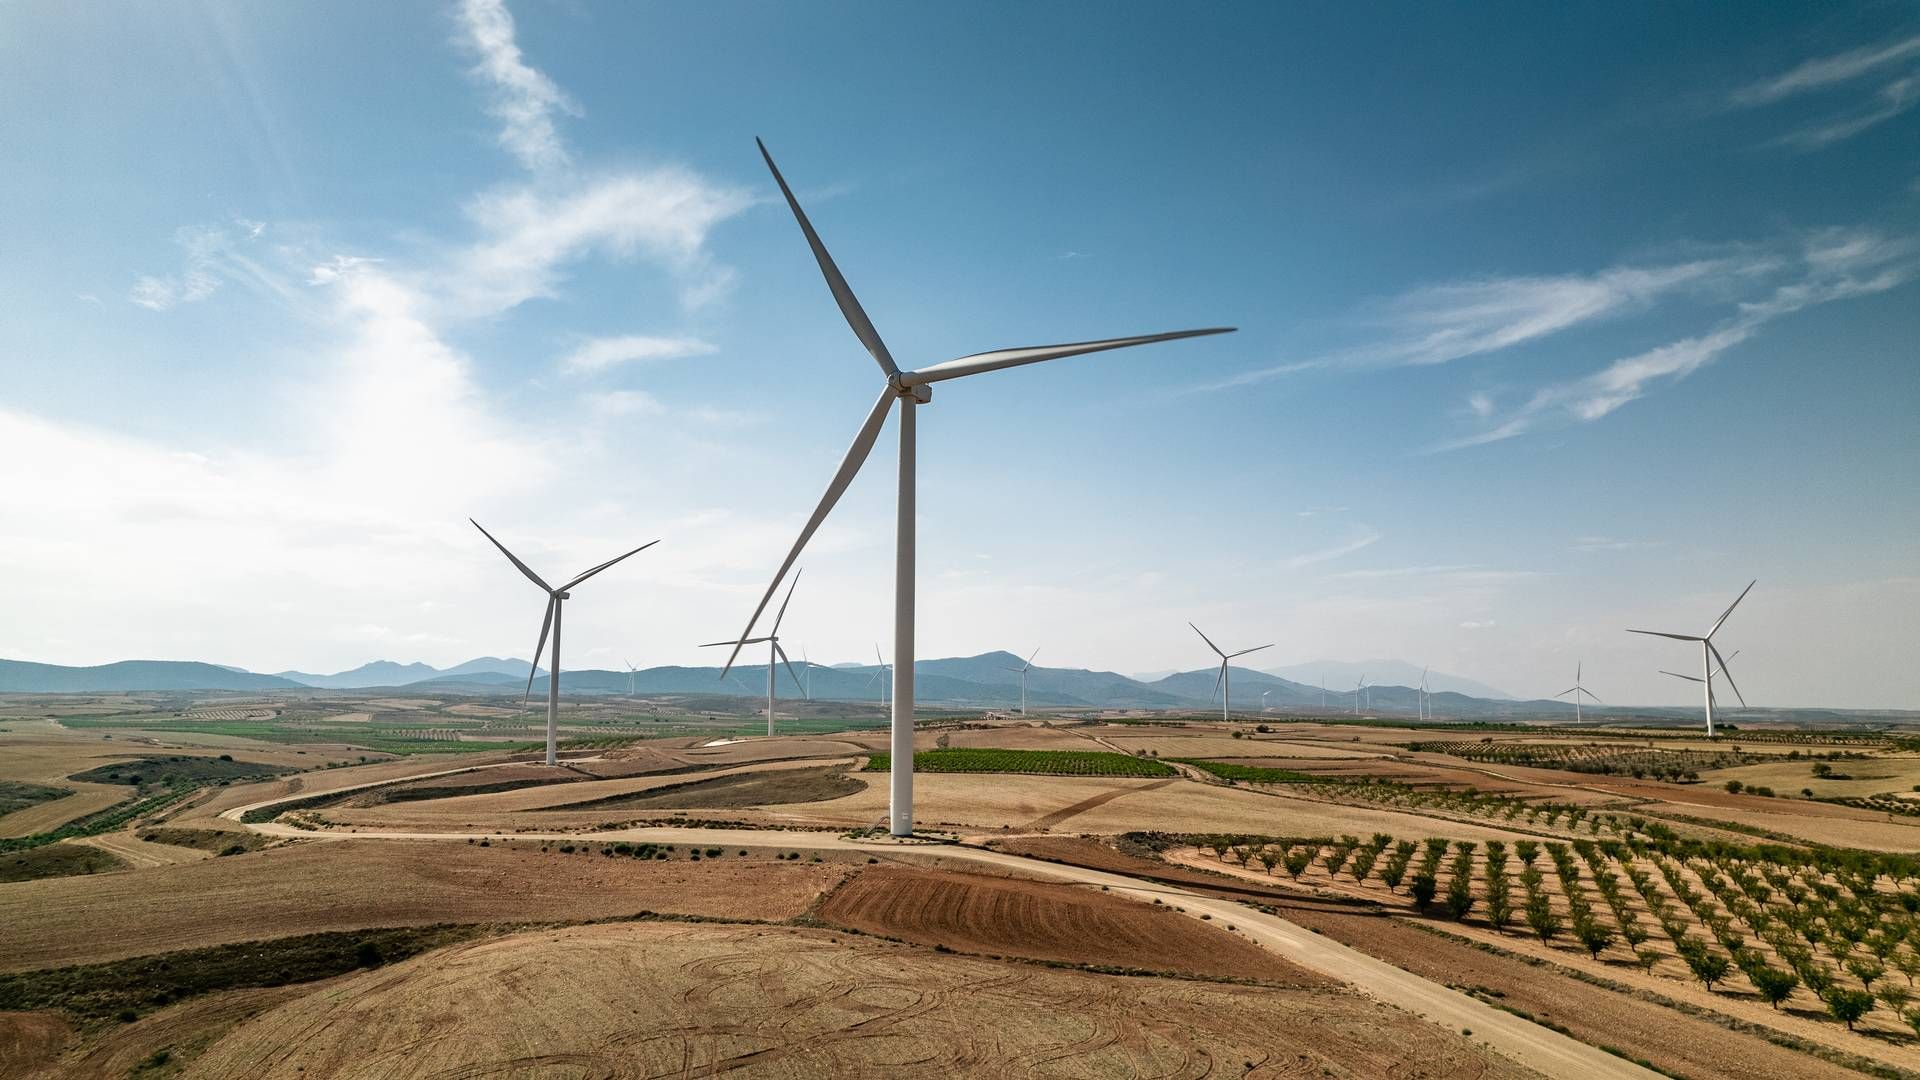 Folksam investerer mere end 500 mio. euro i en fond dedikeret til infrastruktur for vedvarende energi. | Foto: Folksam Group/pr